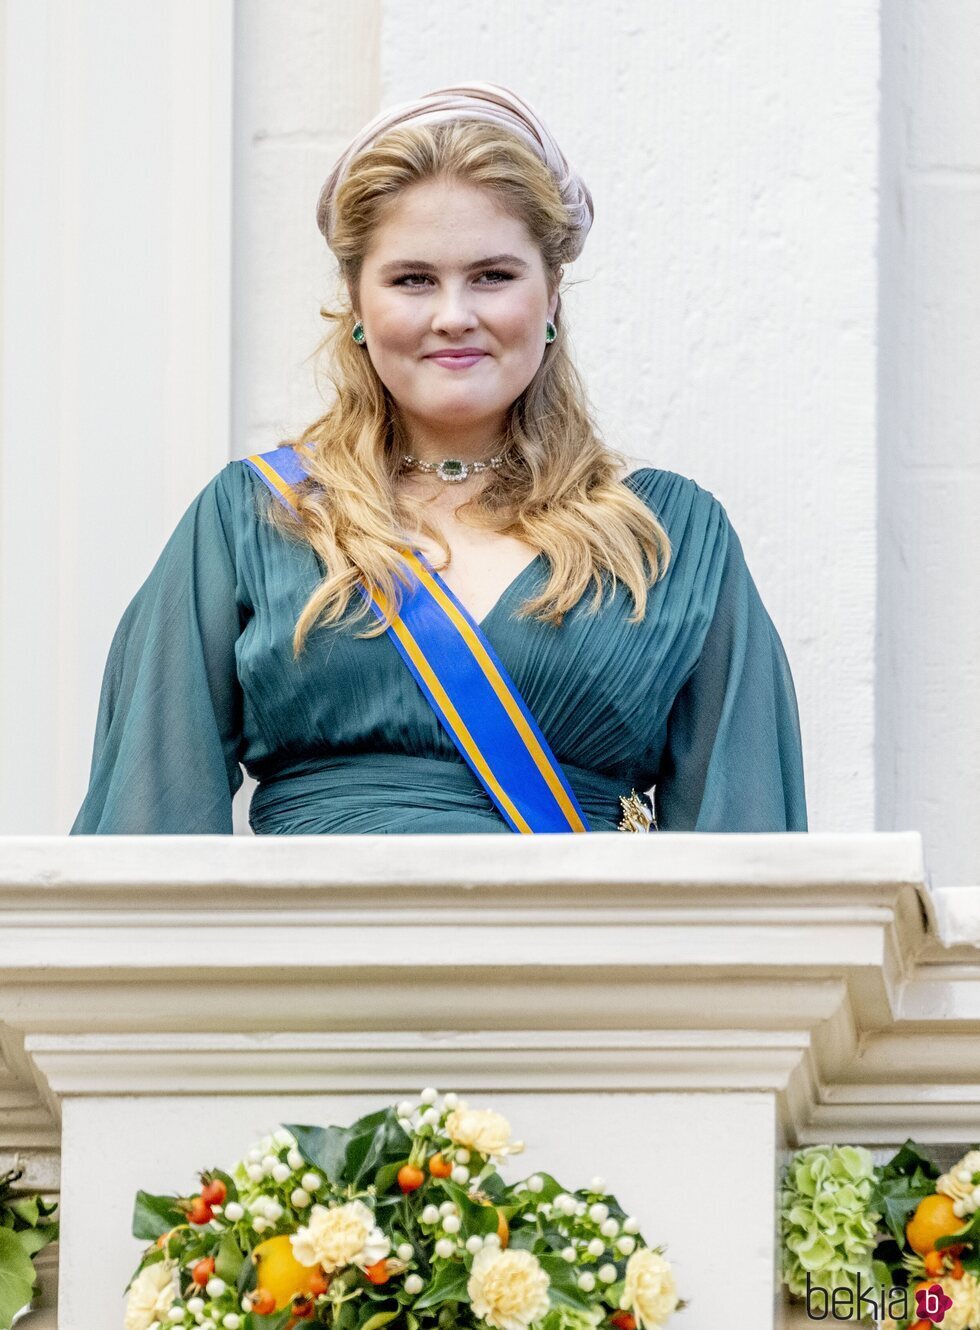 Amalia de Holanda debutando en el Prinsjesdag